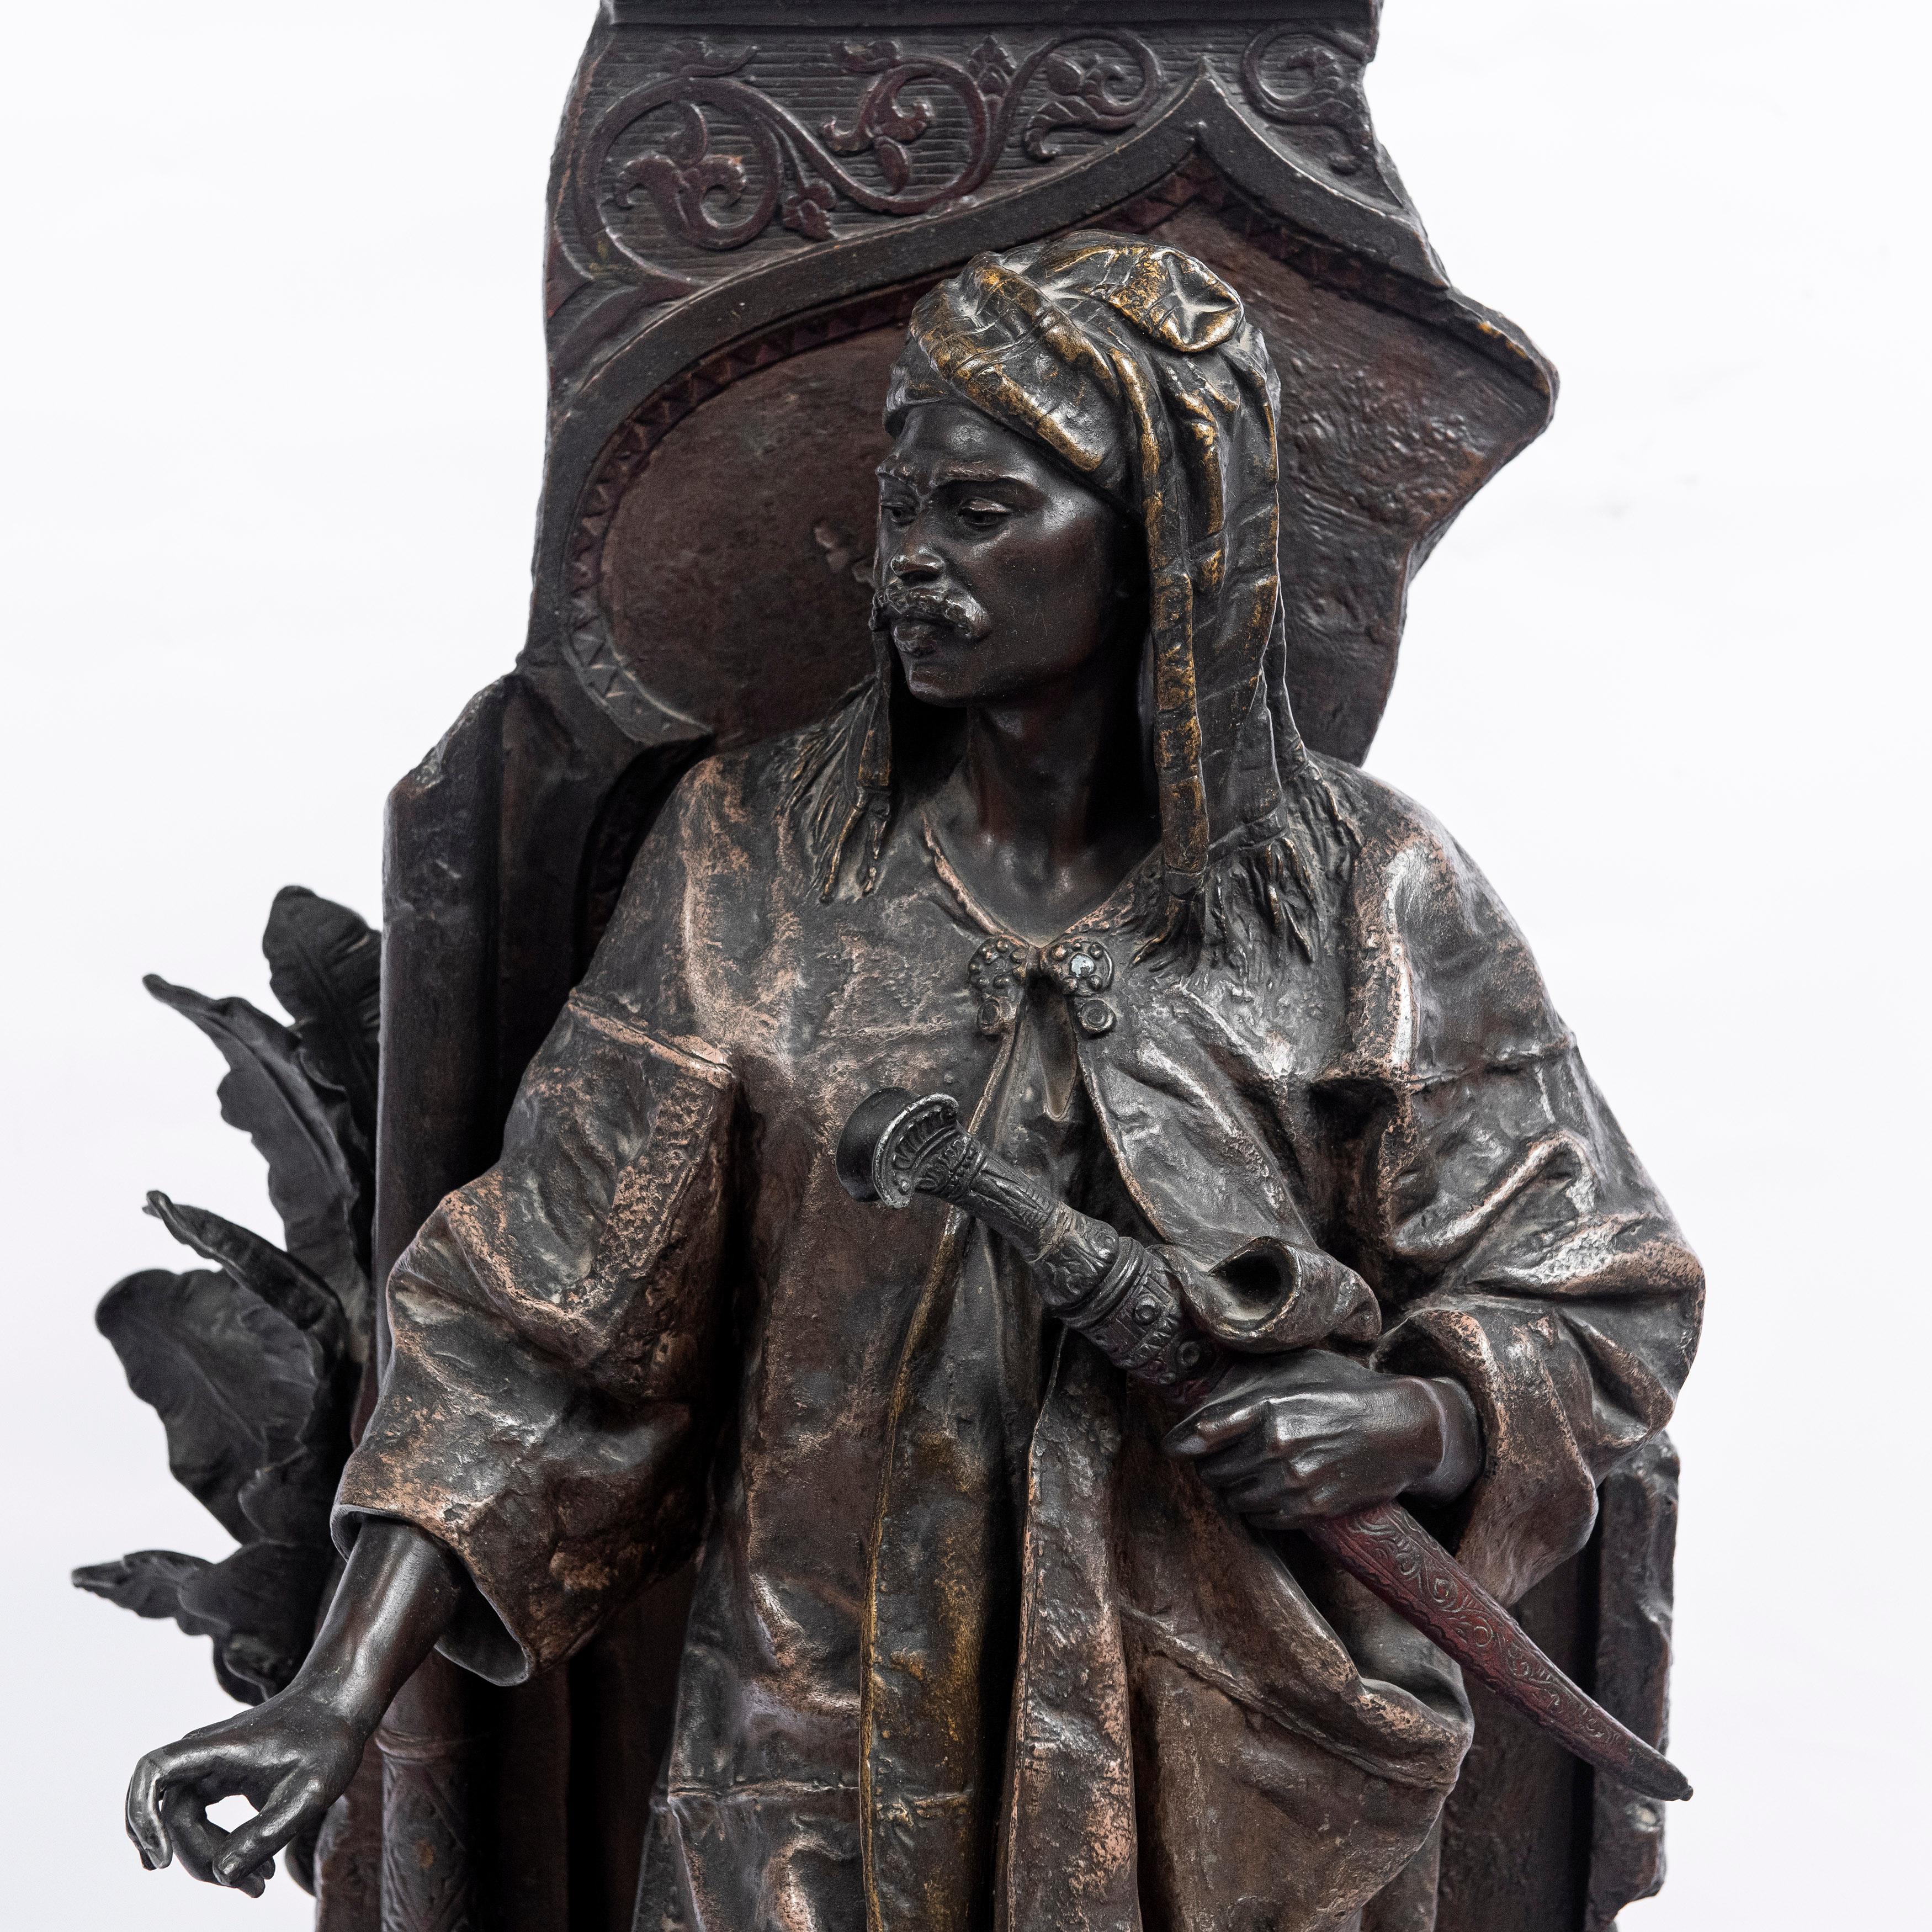 Skulptur aus Bronzelegierung. Signiert E. Blot, Frankreich, Ende des 19. Jahrhunderts.
Orientalischer Stil.
Anatole-Jean Guillot (1865-1911) zugeschrieben.